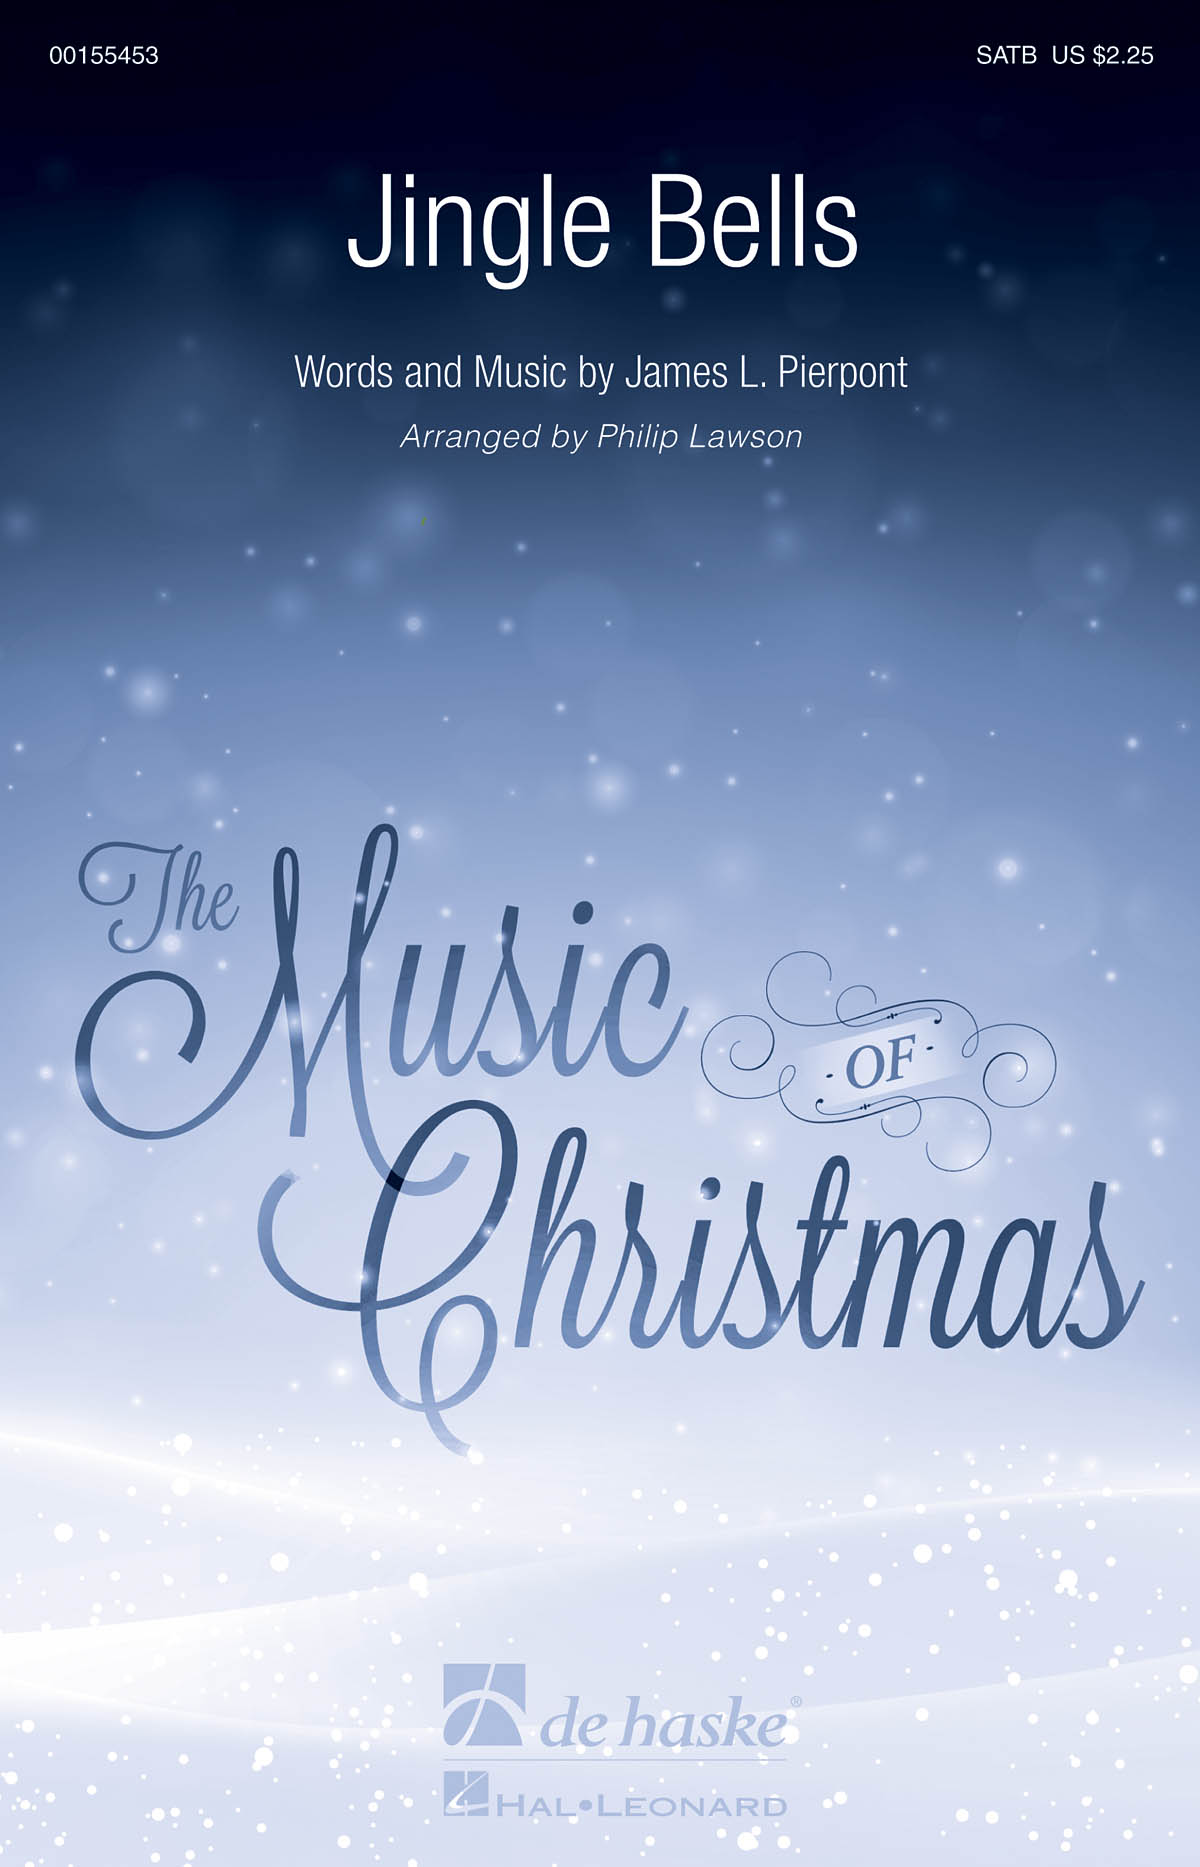 Jingle Bells: Mixed Choir a Cappella: Vocal Score